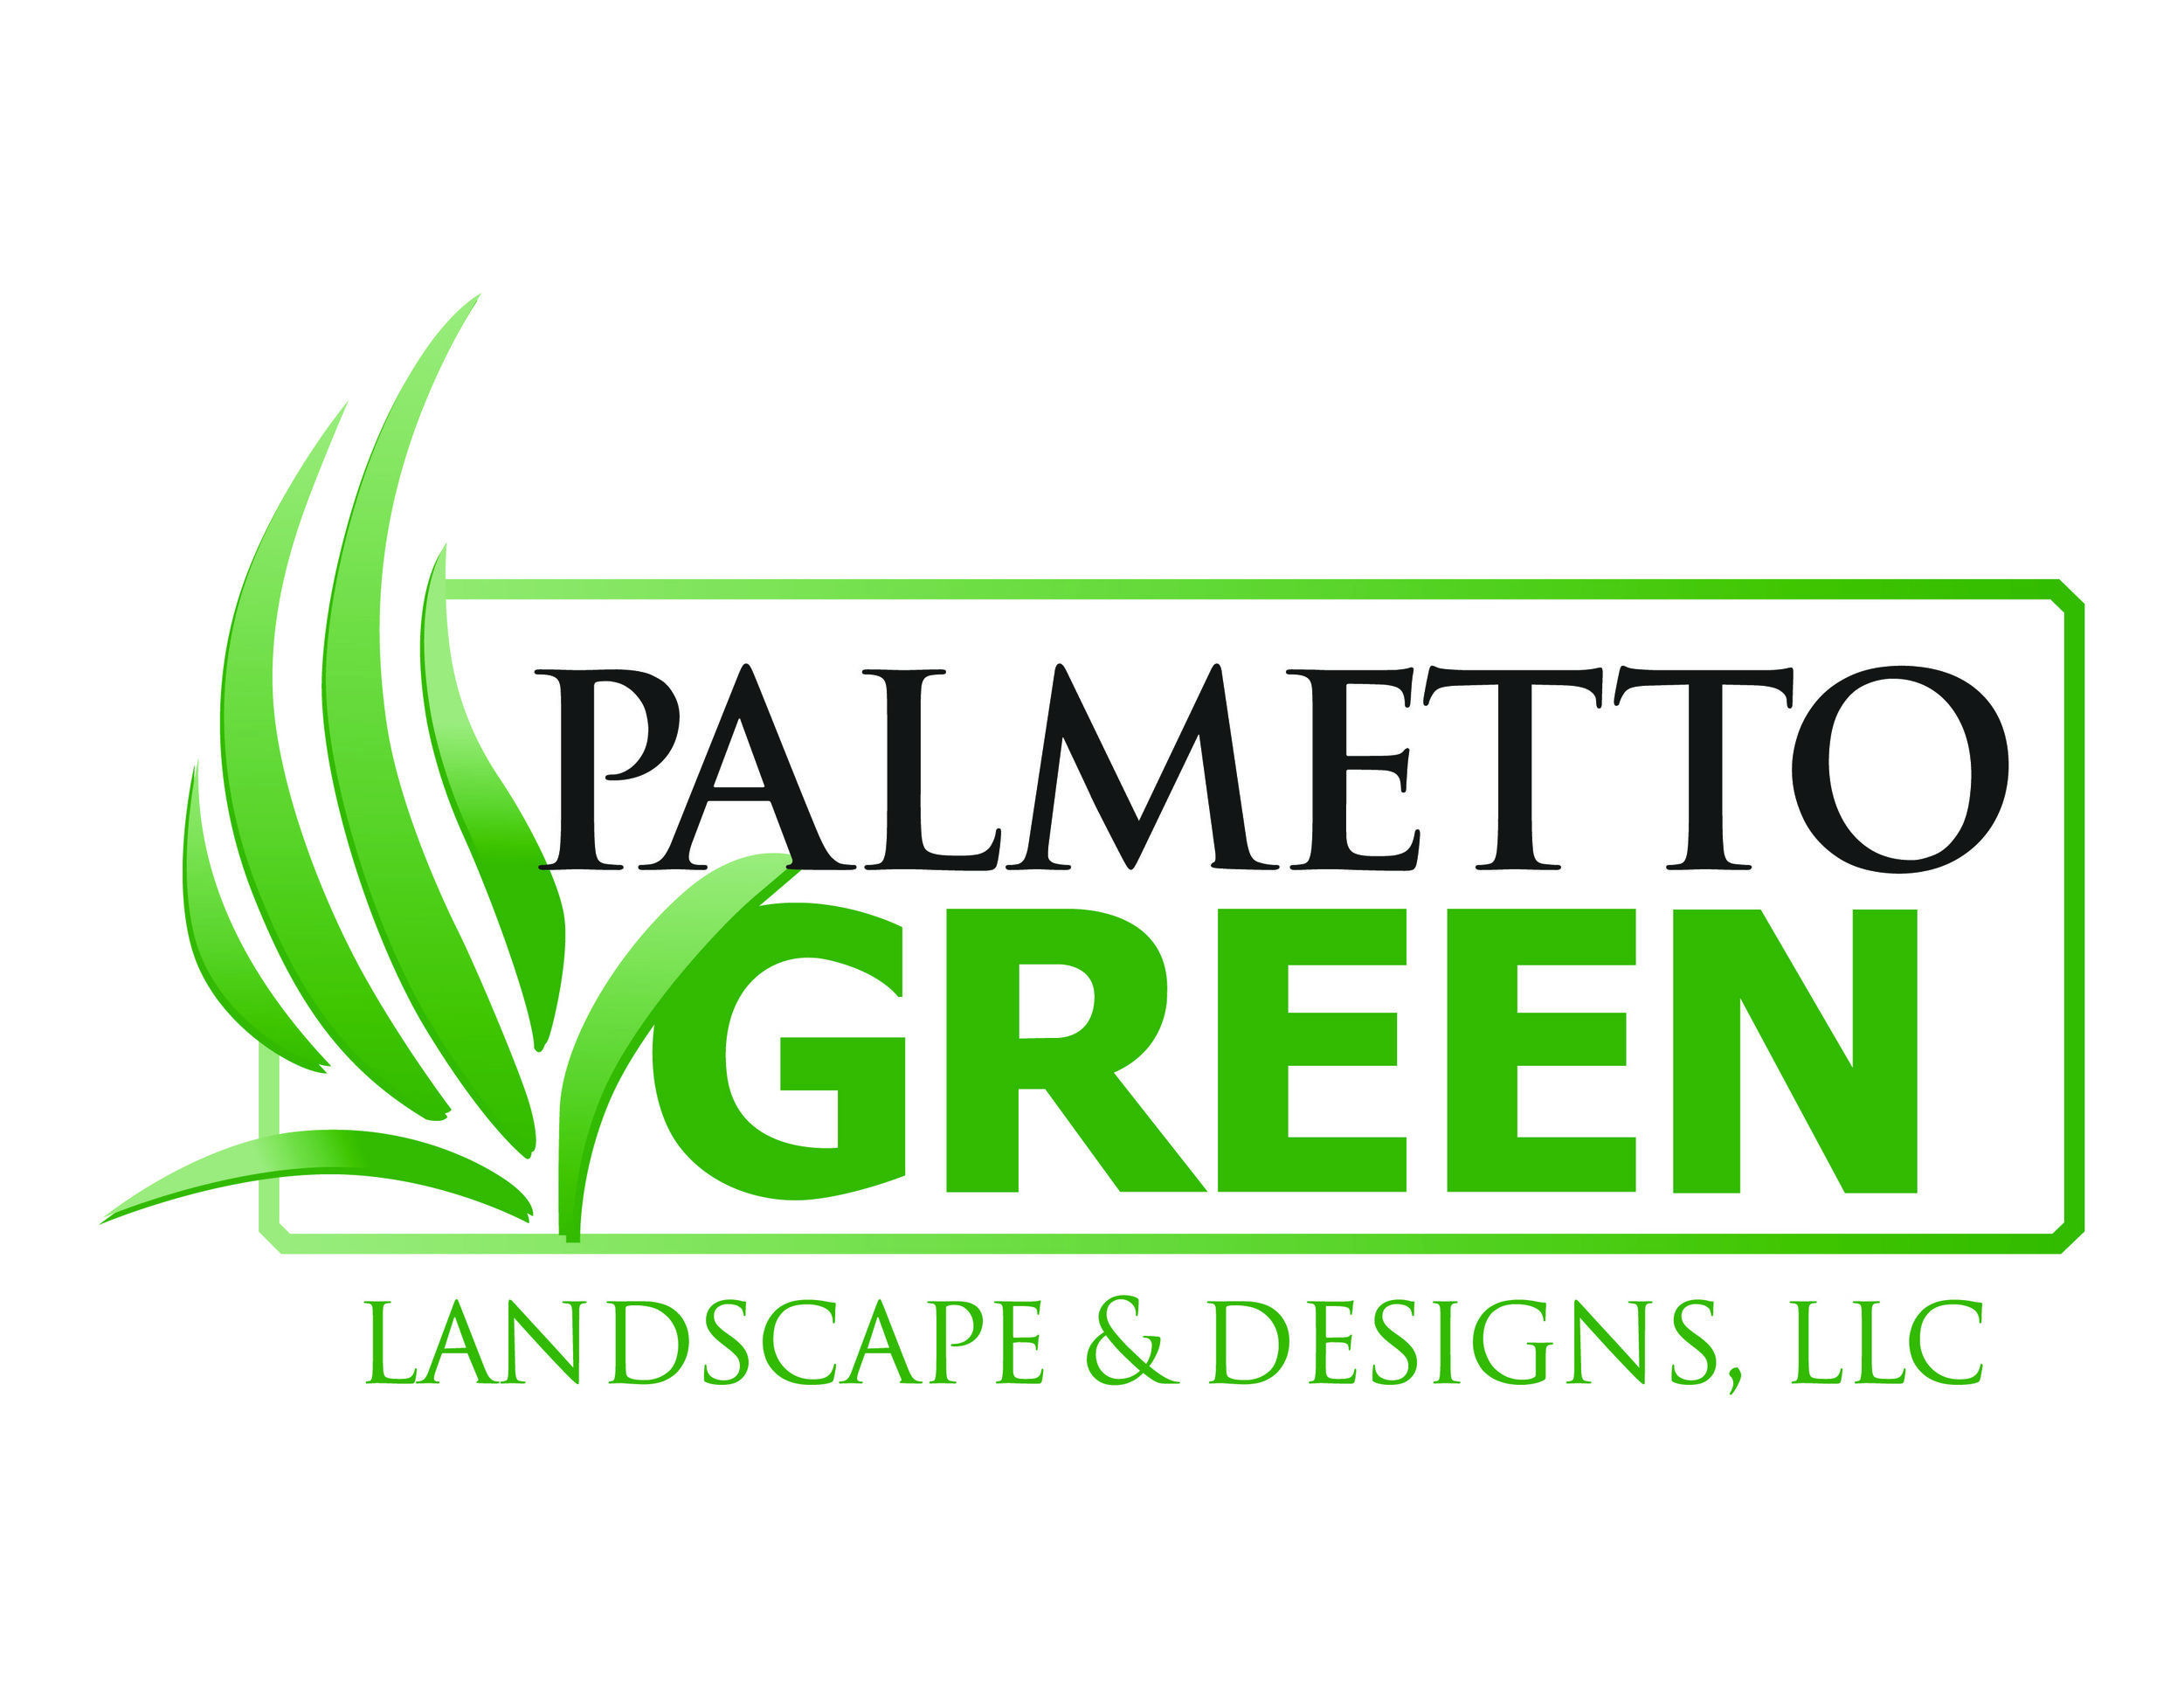 Palmetto Green Landscape